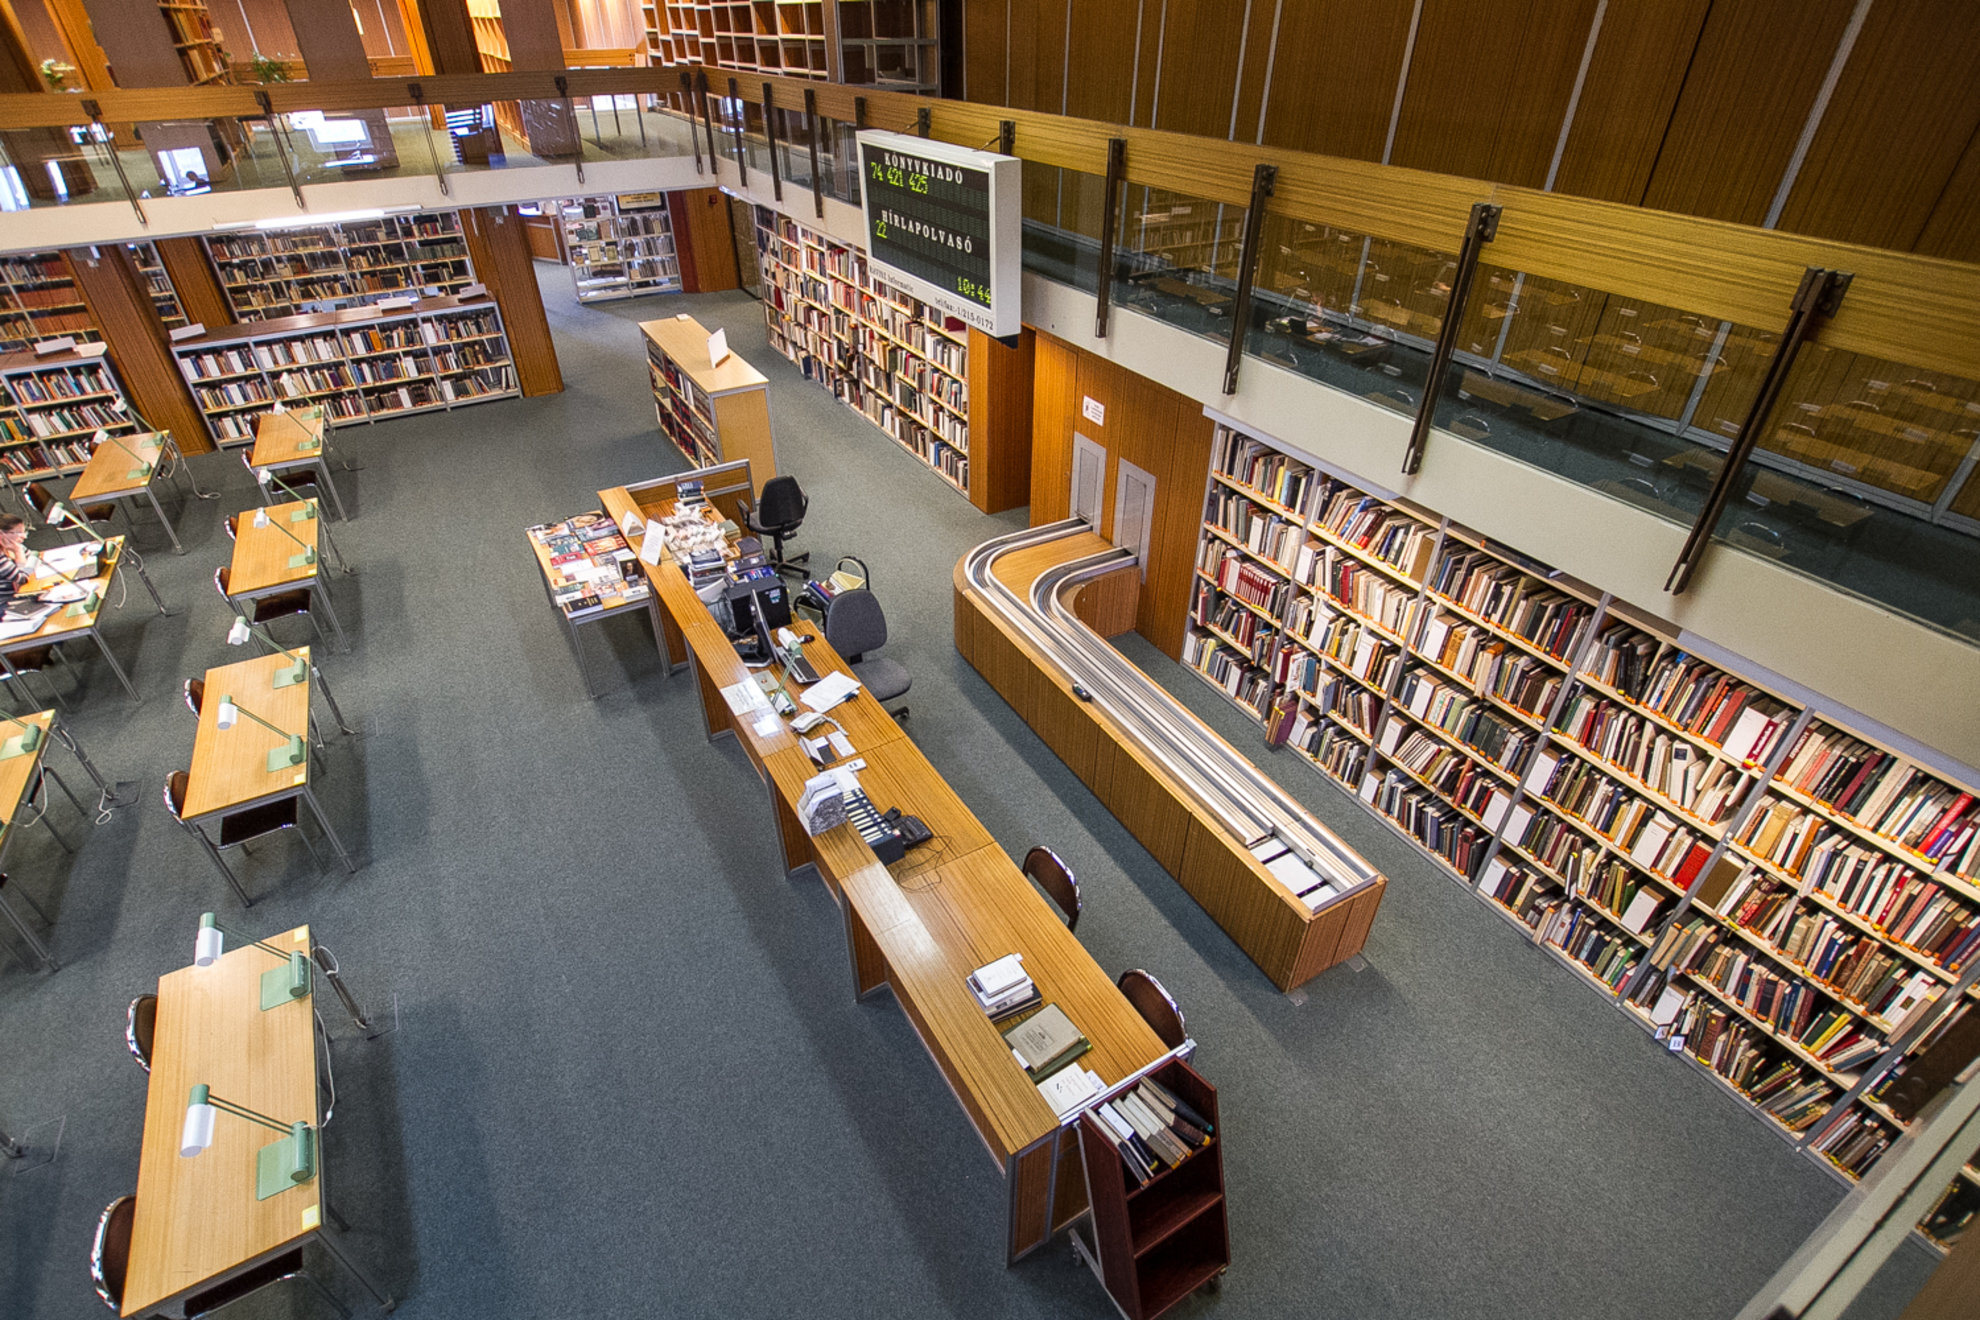 A könyvtáros ahol tud, segít! – ilyen az Országos Széchényi Könyvtár Kérdezze a könyvtárost! szolgáltatása